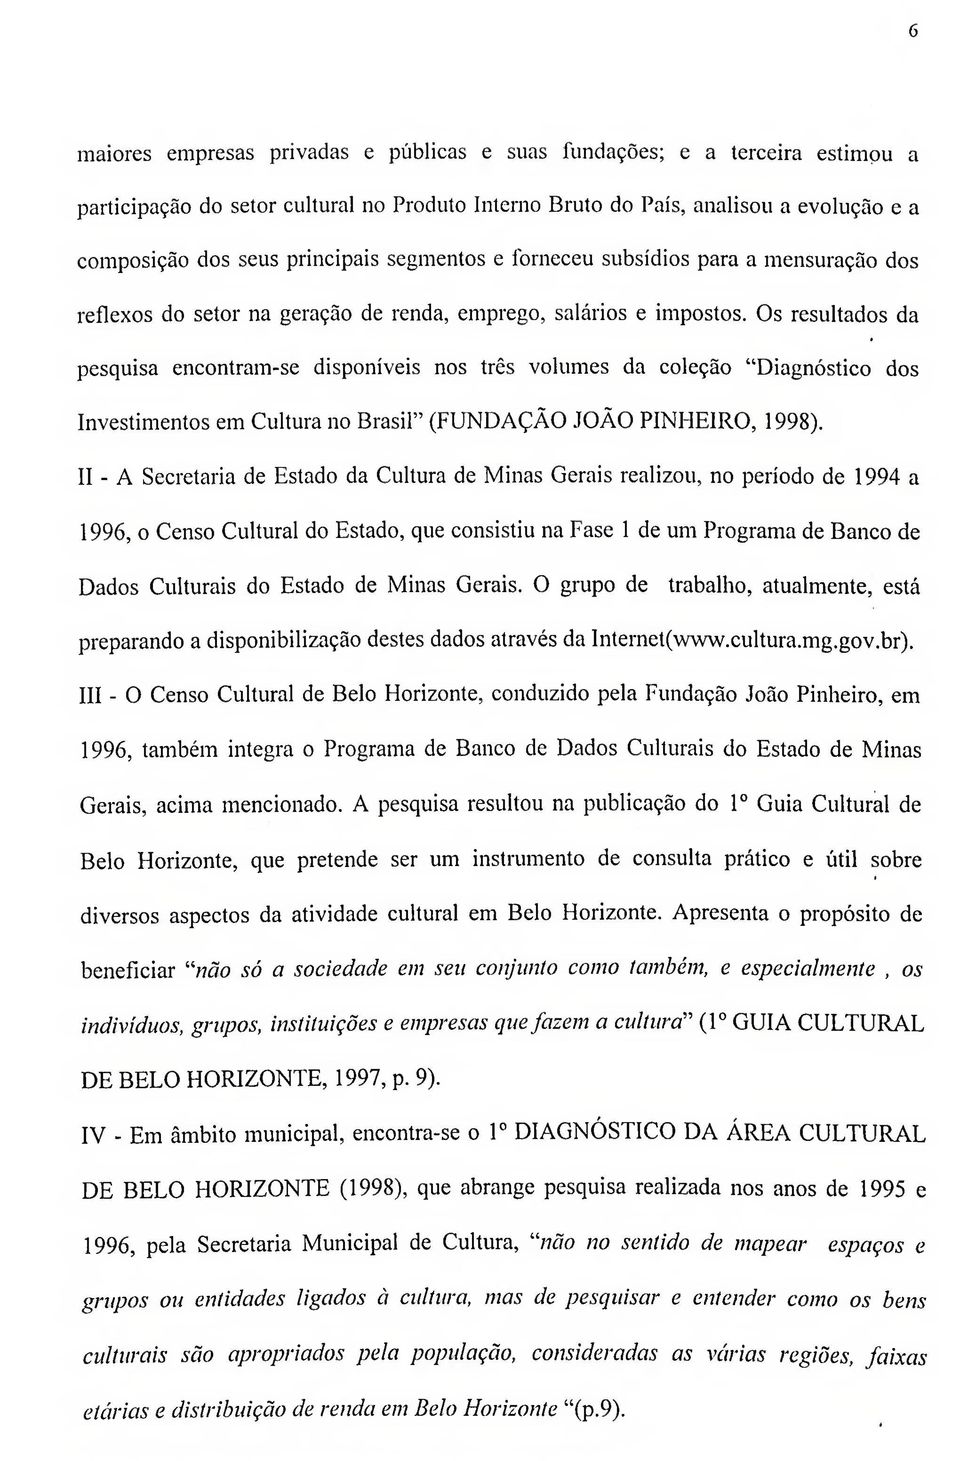 Os resultados da pesquisa encontram-se disponíveis nos três volumes da coleção "Diagnóstico dos Investimentos em Cultura no Brasil" (FUNDAÇÃO JOÃO PINHEIRO, 1998).